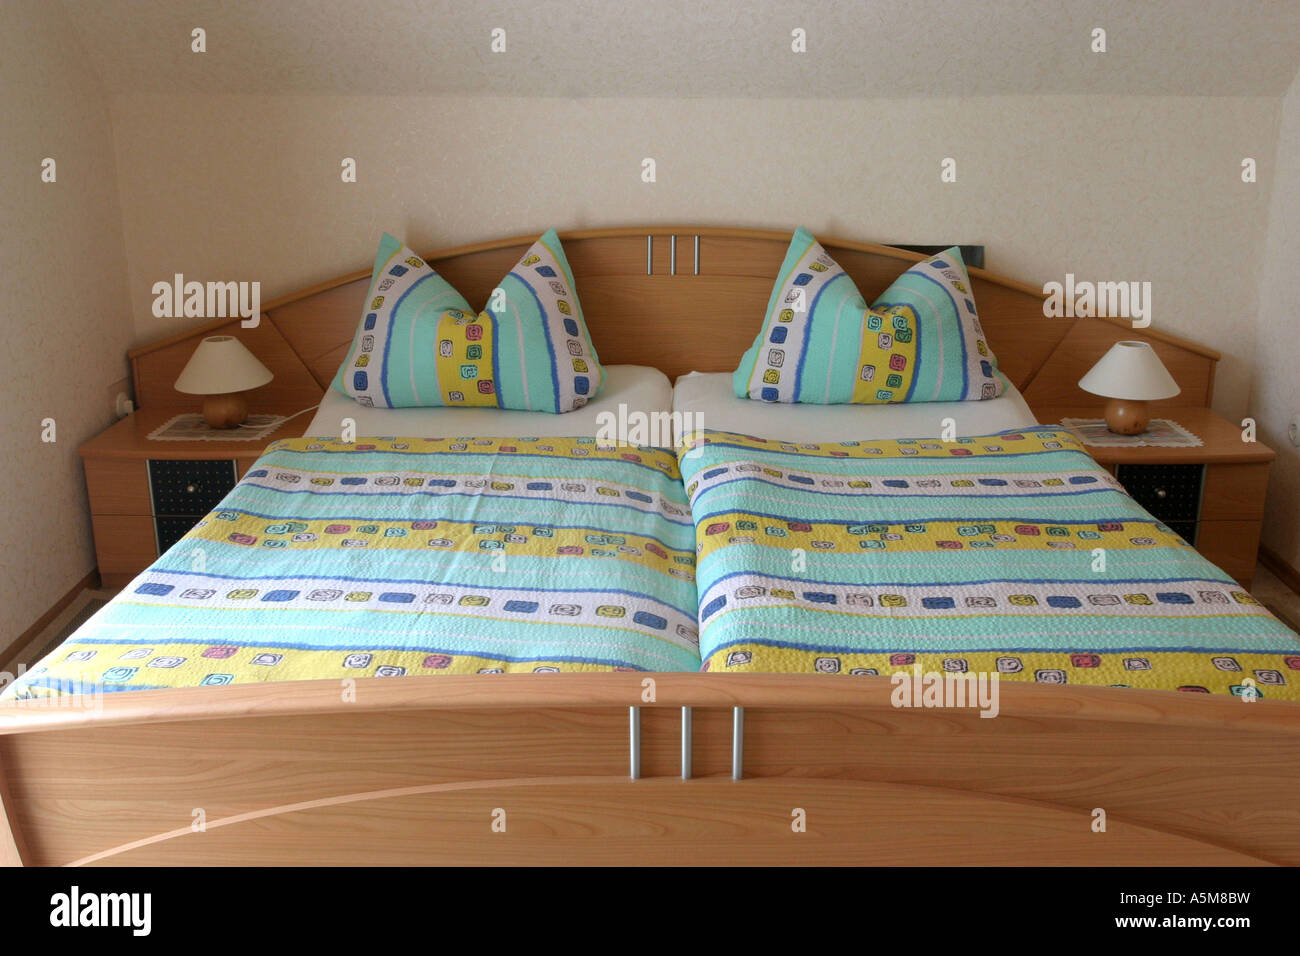 Doppelbett Bett Möbel Mobiliar Schlafzimmer Bett Schlafplatz Wohnung Wohnraum Zimmer wohnen Stube zu Hause daheim Heim Wohnungse Stock Photo